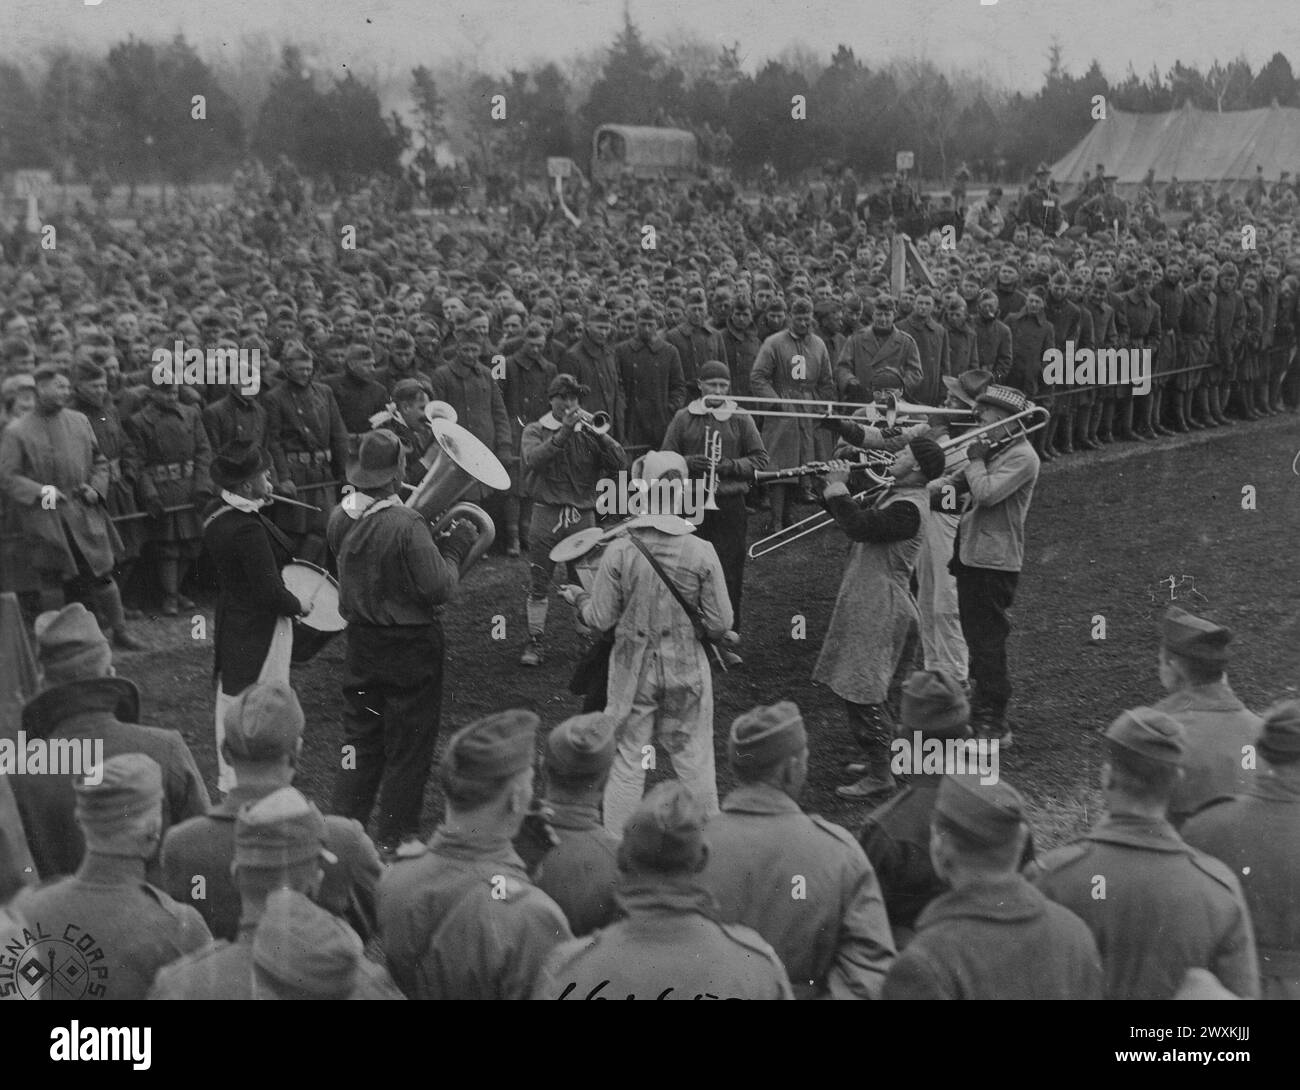 352nd INFANTRY JAZZ BAND ingresso al concorso Jazz Band. Incontro sul campo militare tenuto dagli uomini del 88°. Divisione. Gondrecourt, Meuse, Francia ca. 1919 Foto Stock